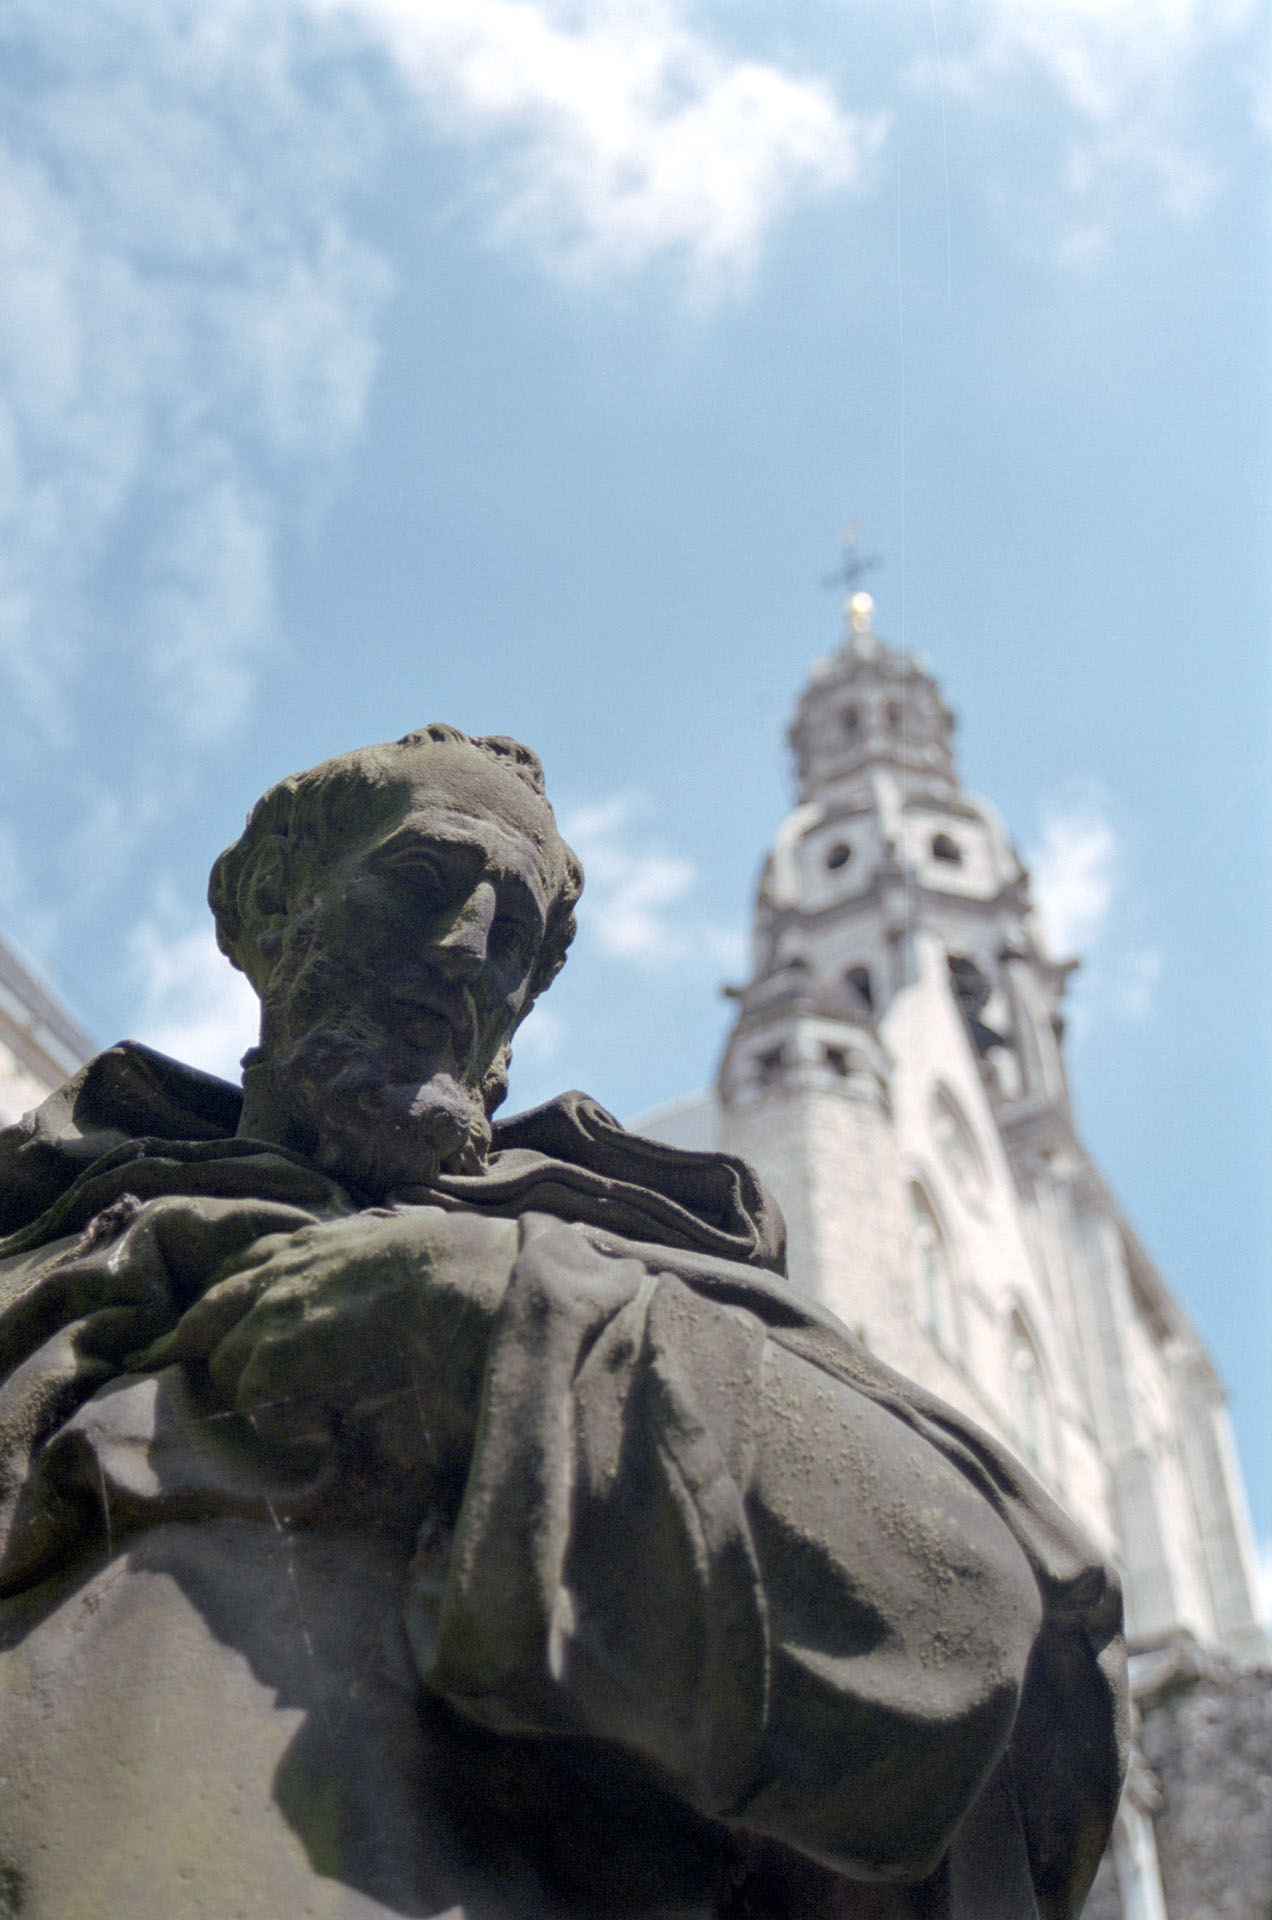 Antwerpen - Belgium